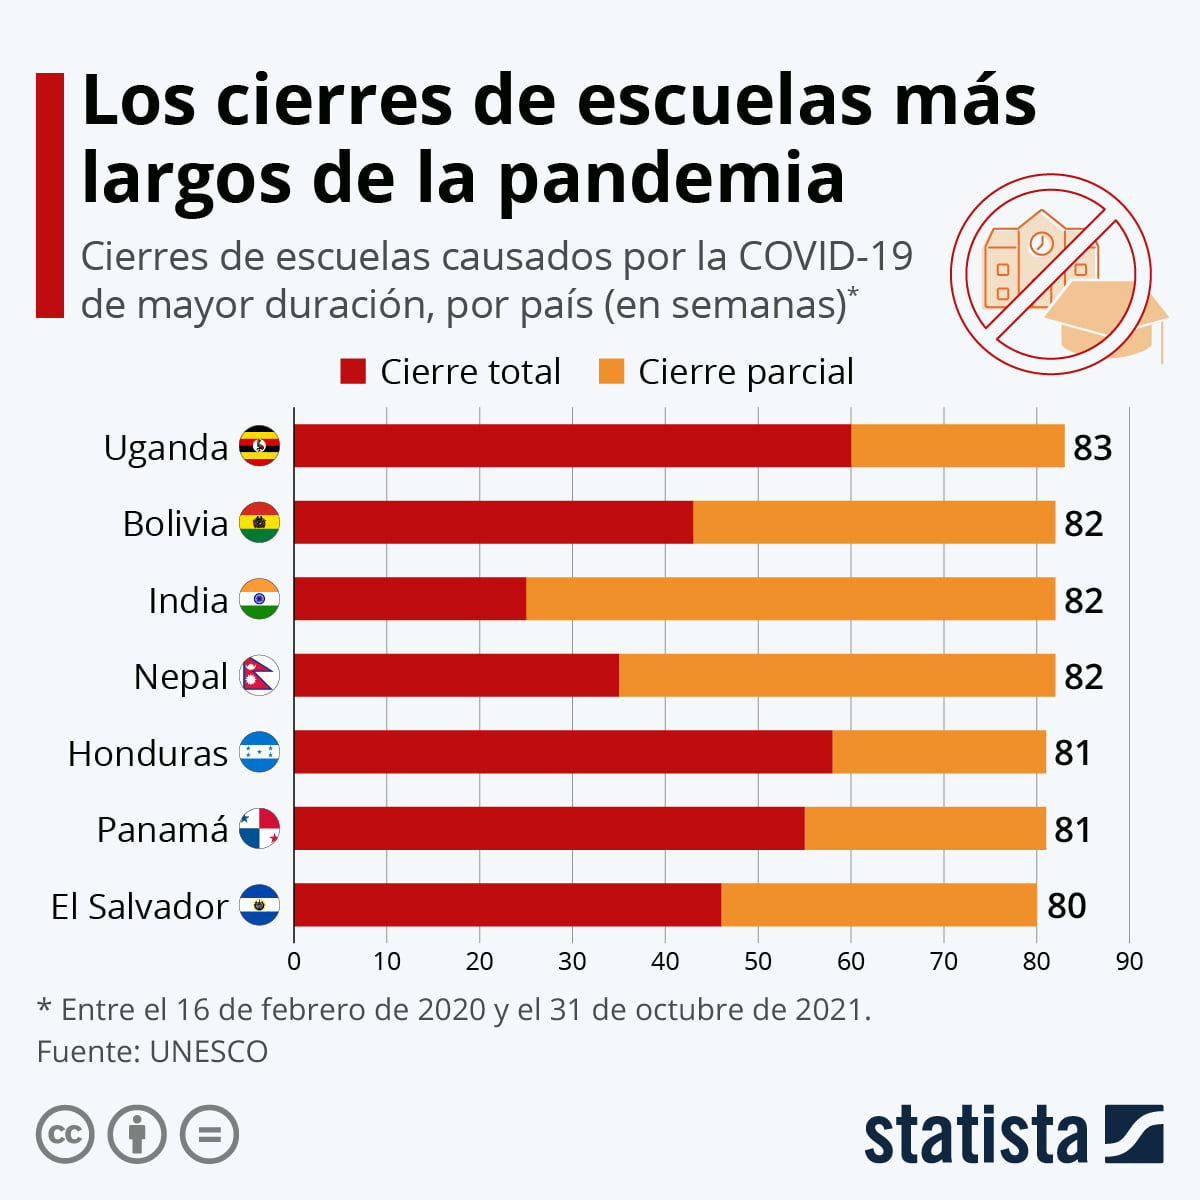 Los cierres escolares más largos de la pandemia expresados en semanas (Fuente: Statista con base a datos de la Unesco). 